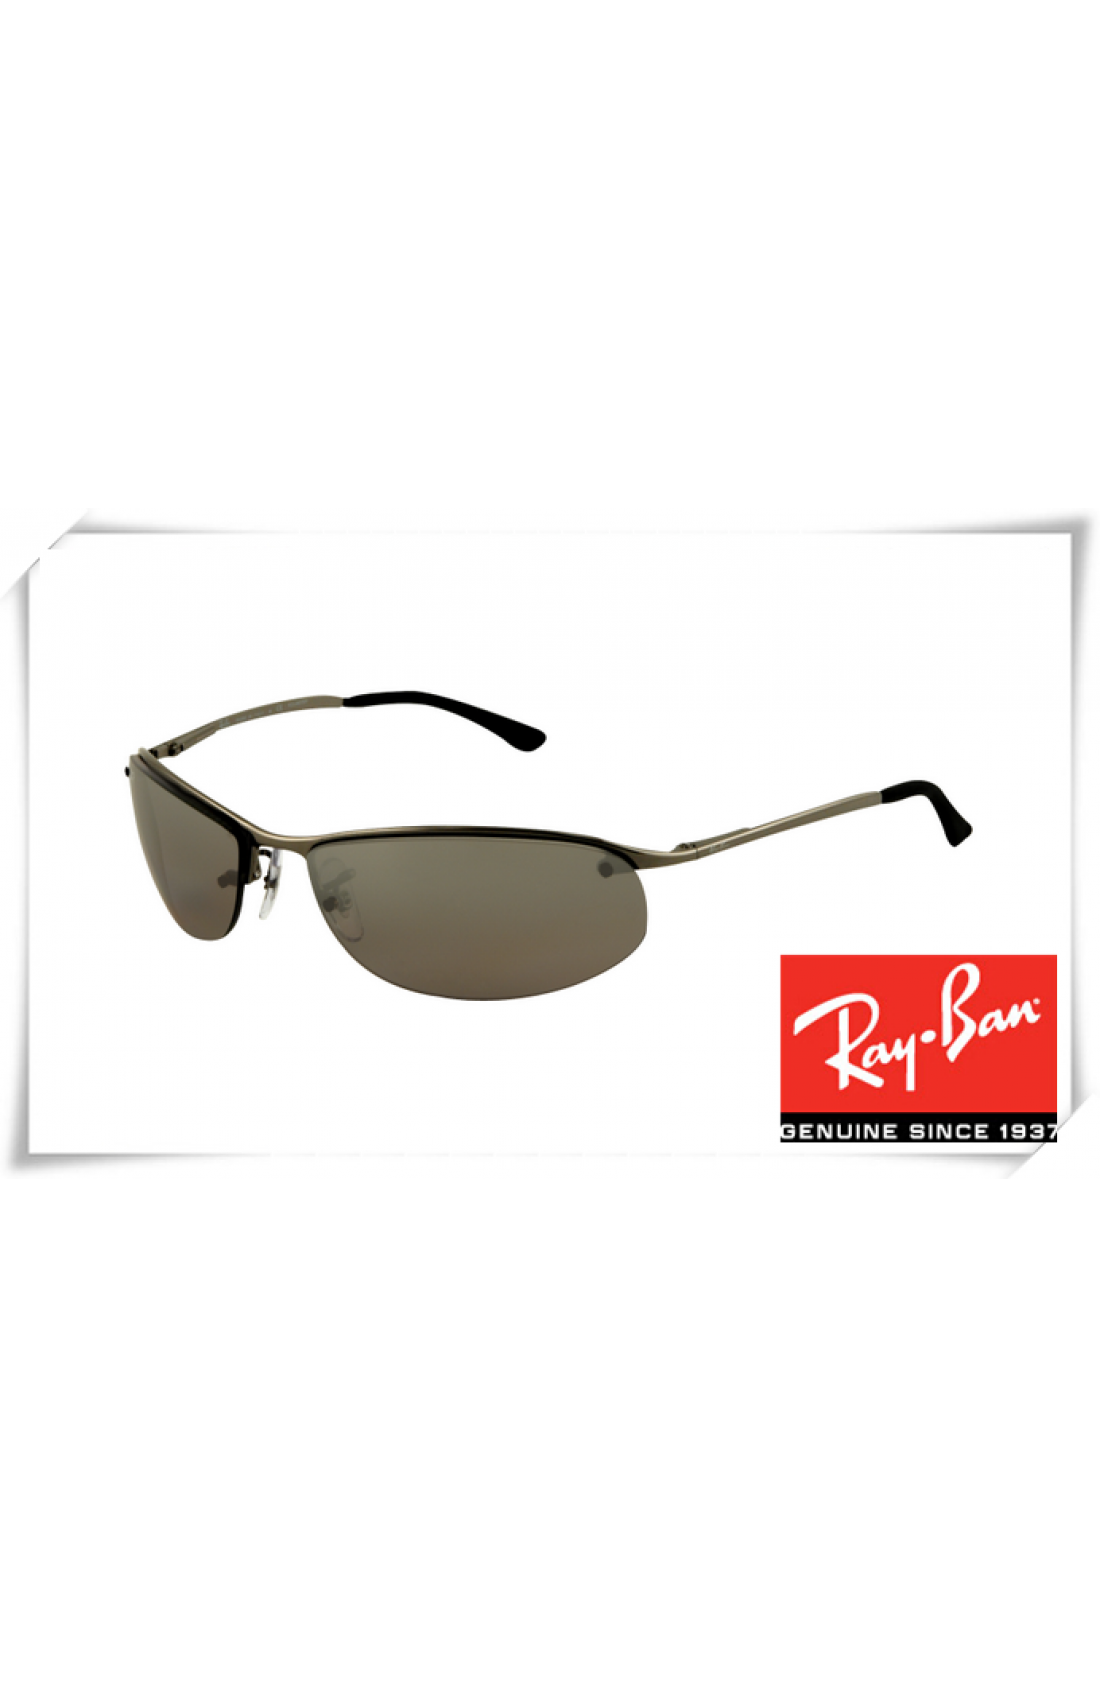 ray ban top bar sunglasses